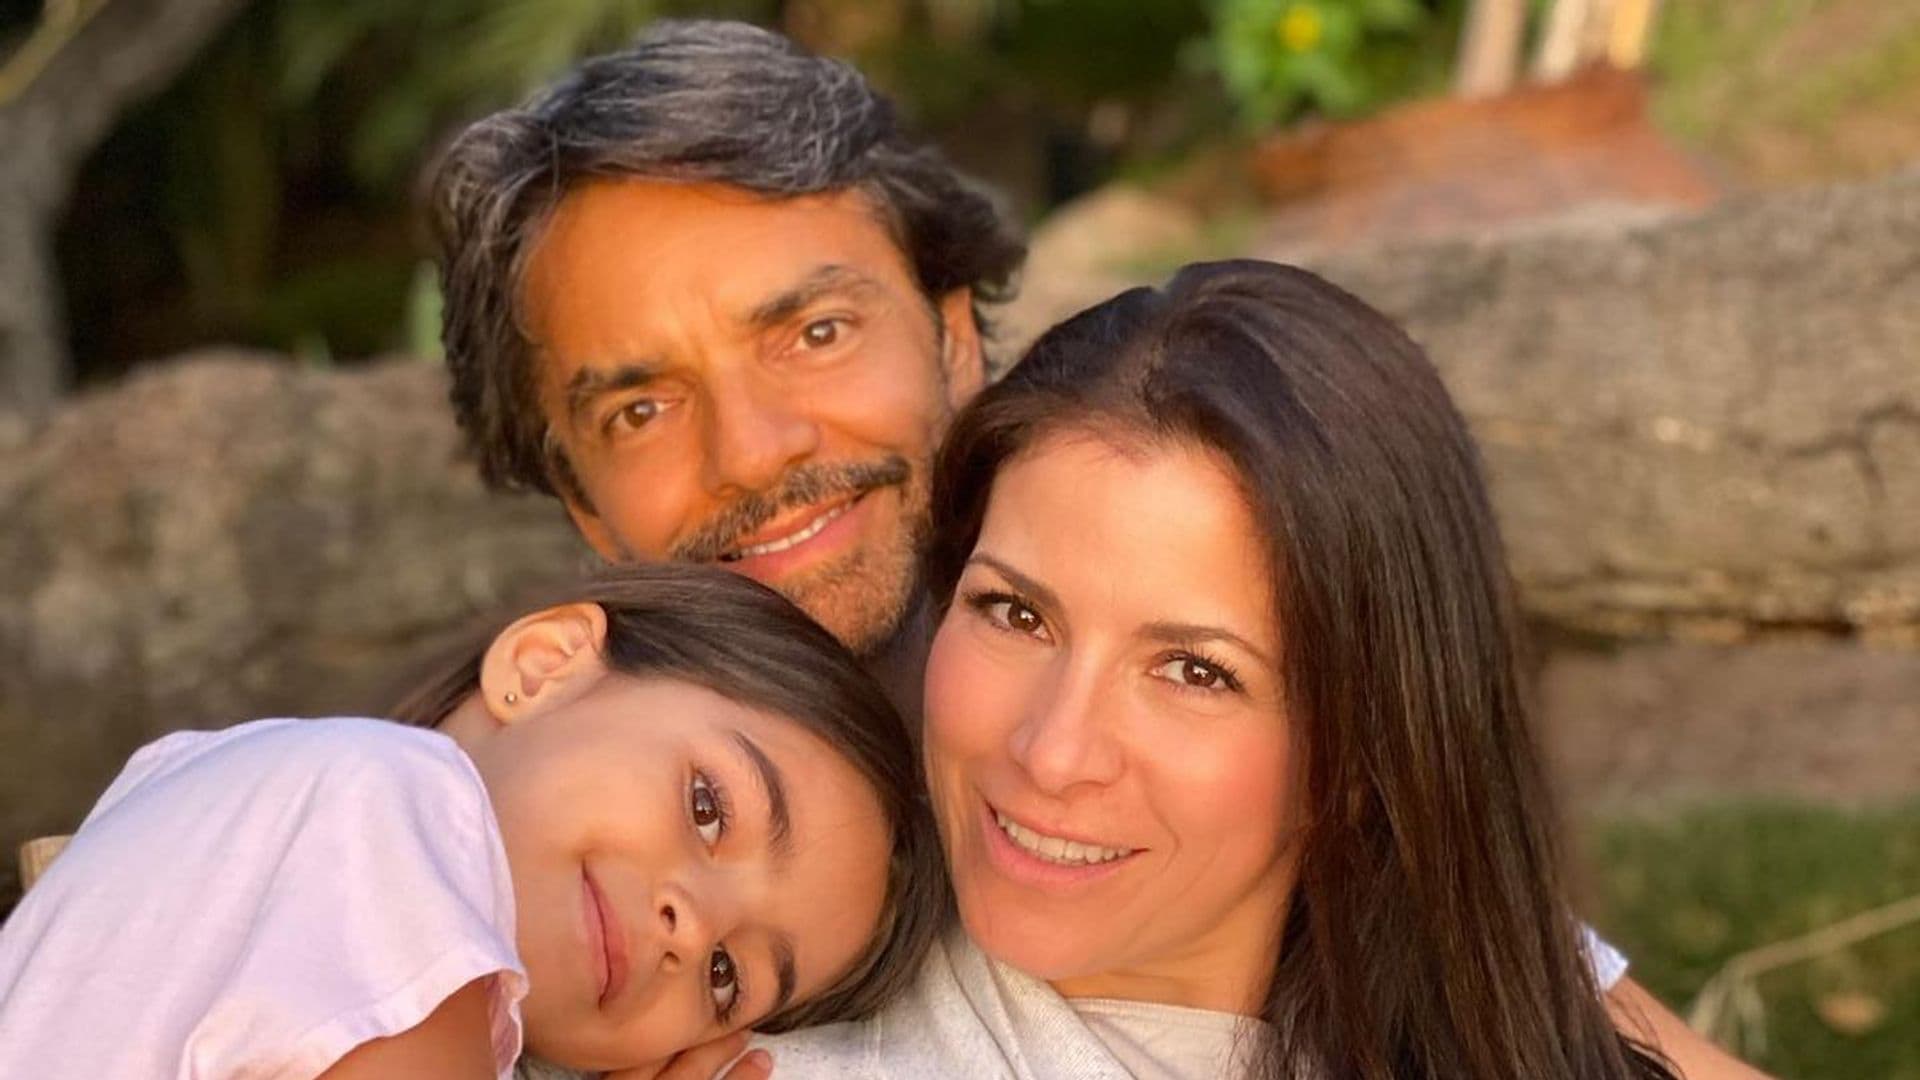 ¡Cuánto ha crecido! Eugenio Derbez y Alessandra Rosaldo festejan el cumpleaños 10 de su hija Aitana